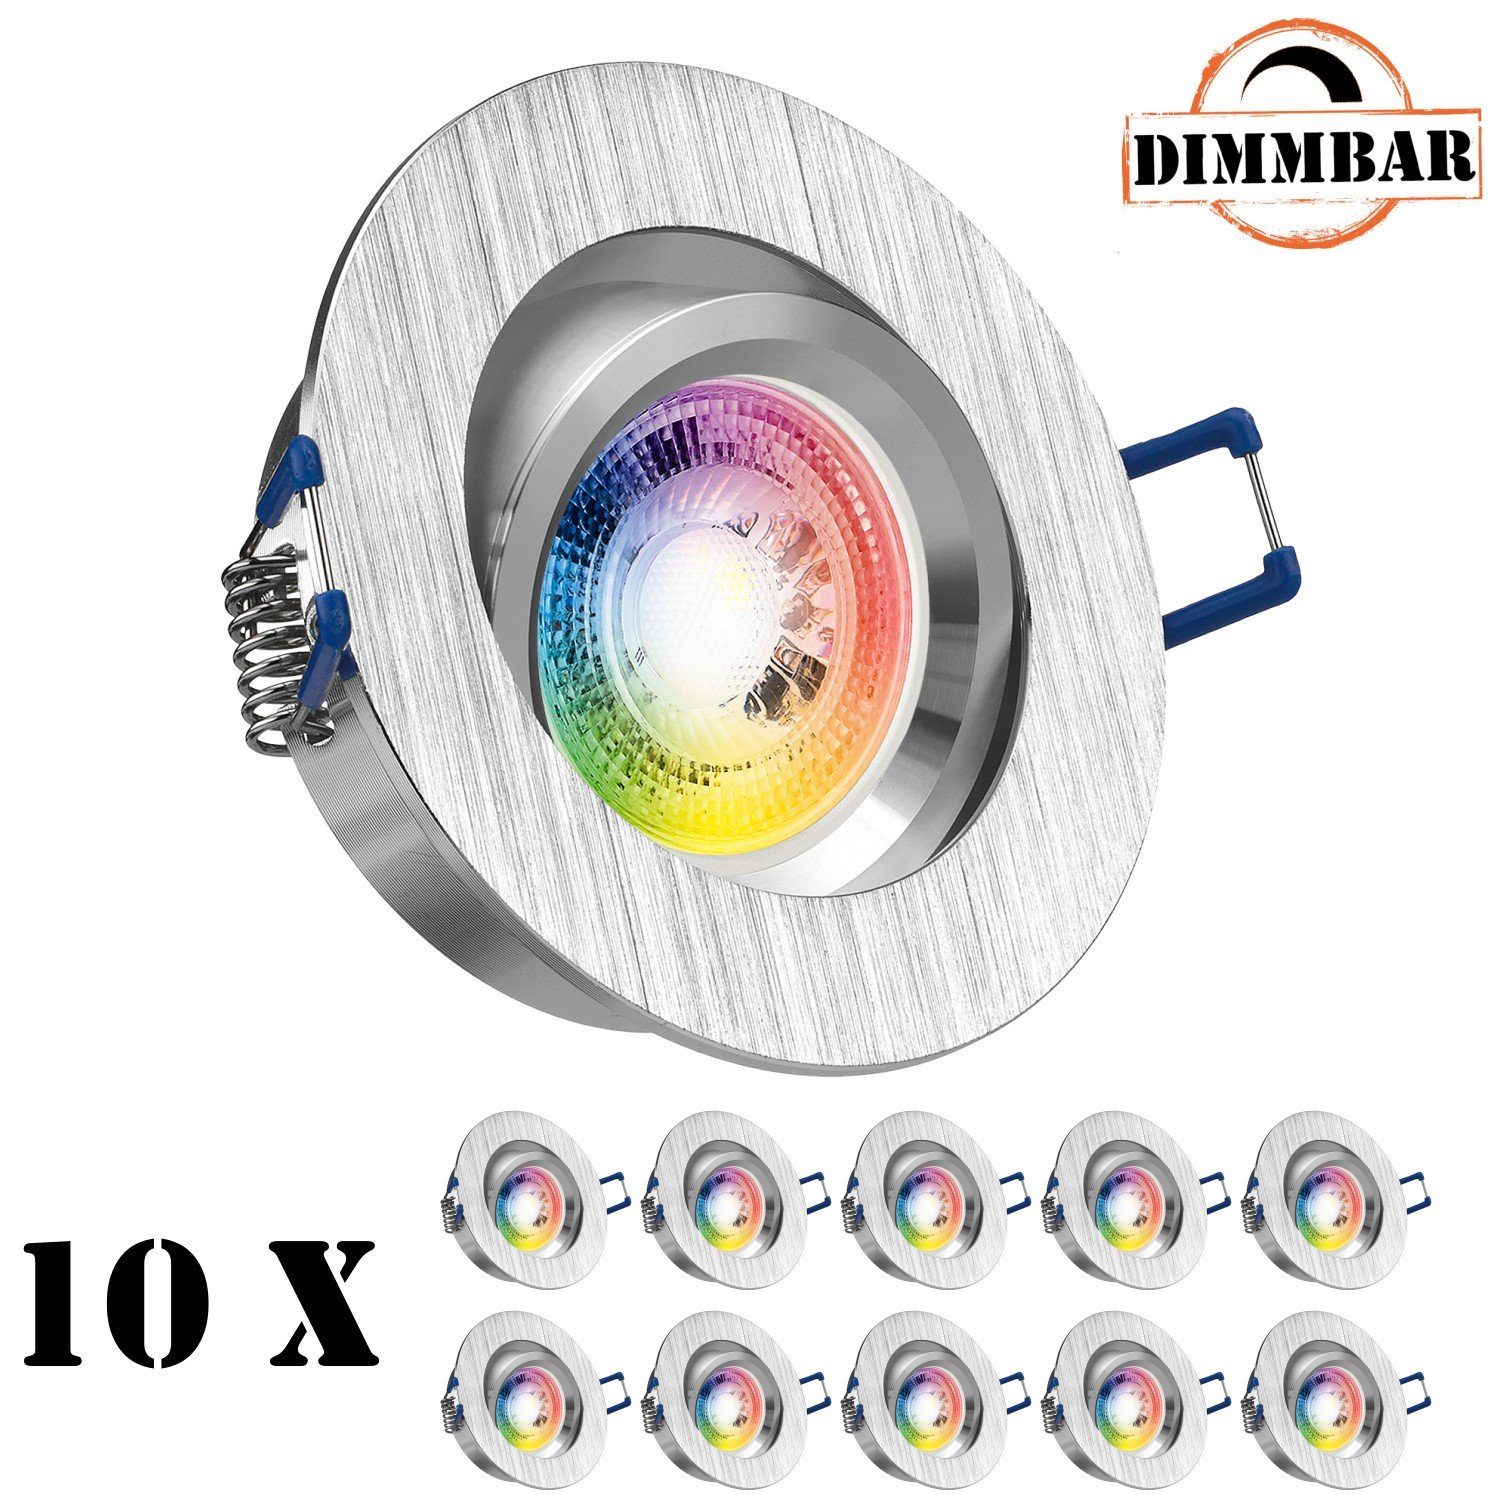 LEDANDO LED Einbaustrahler 10er RGB LED Einbaustrahler Set GU10 in aluminium gebürstet mit 3W LED